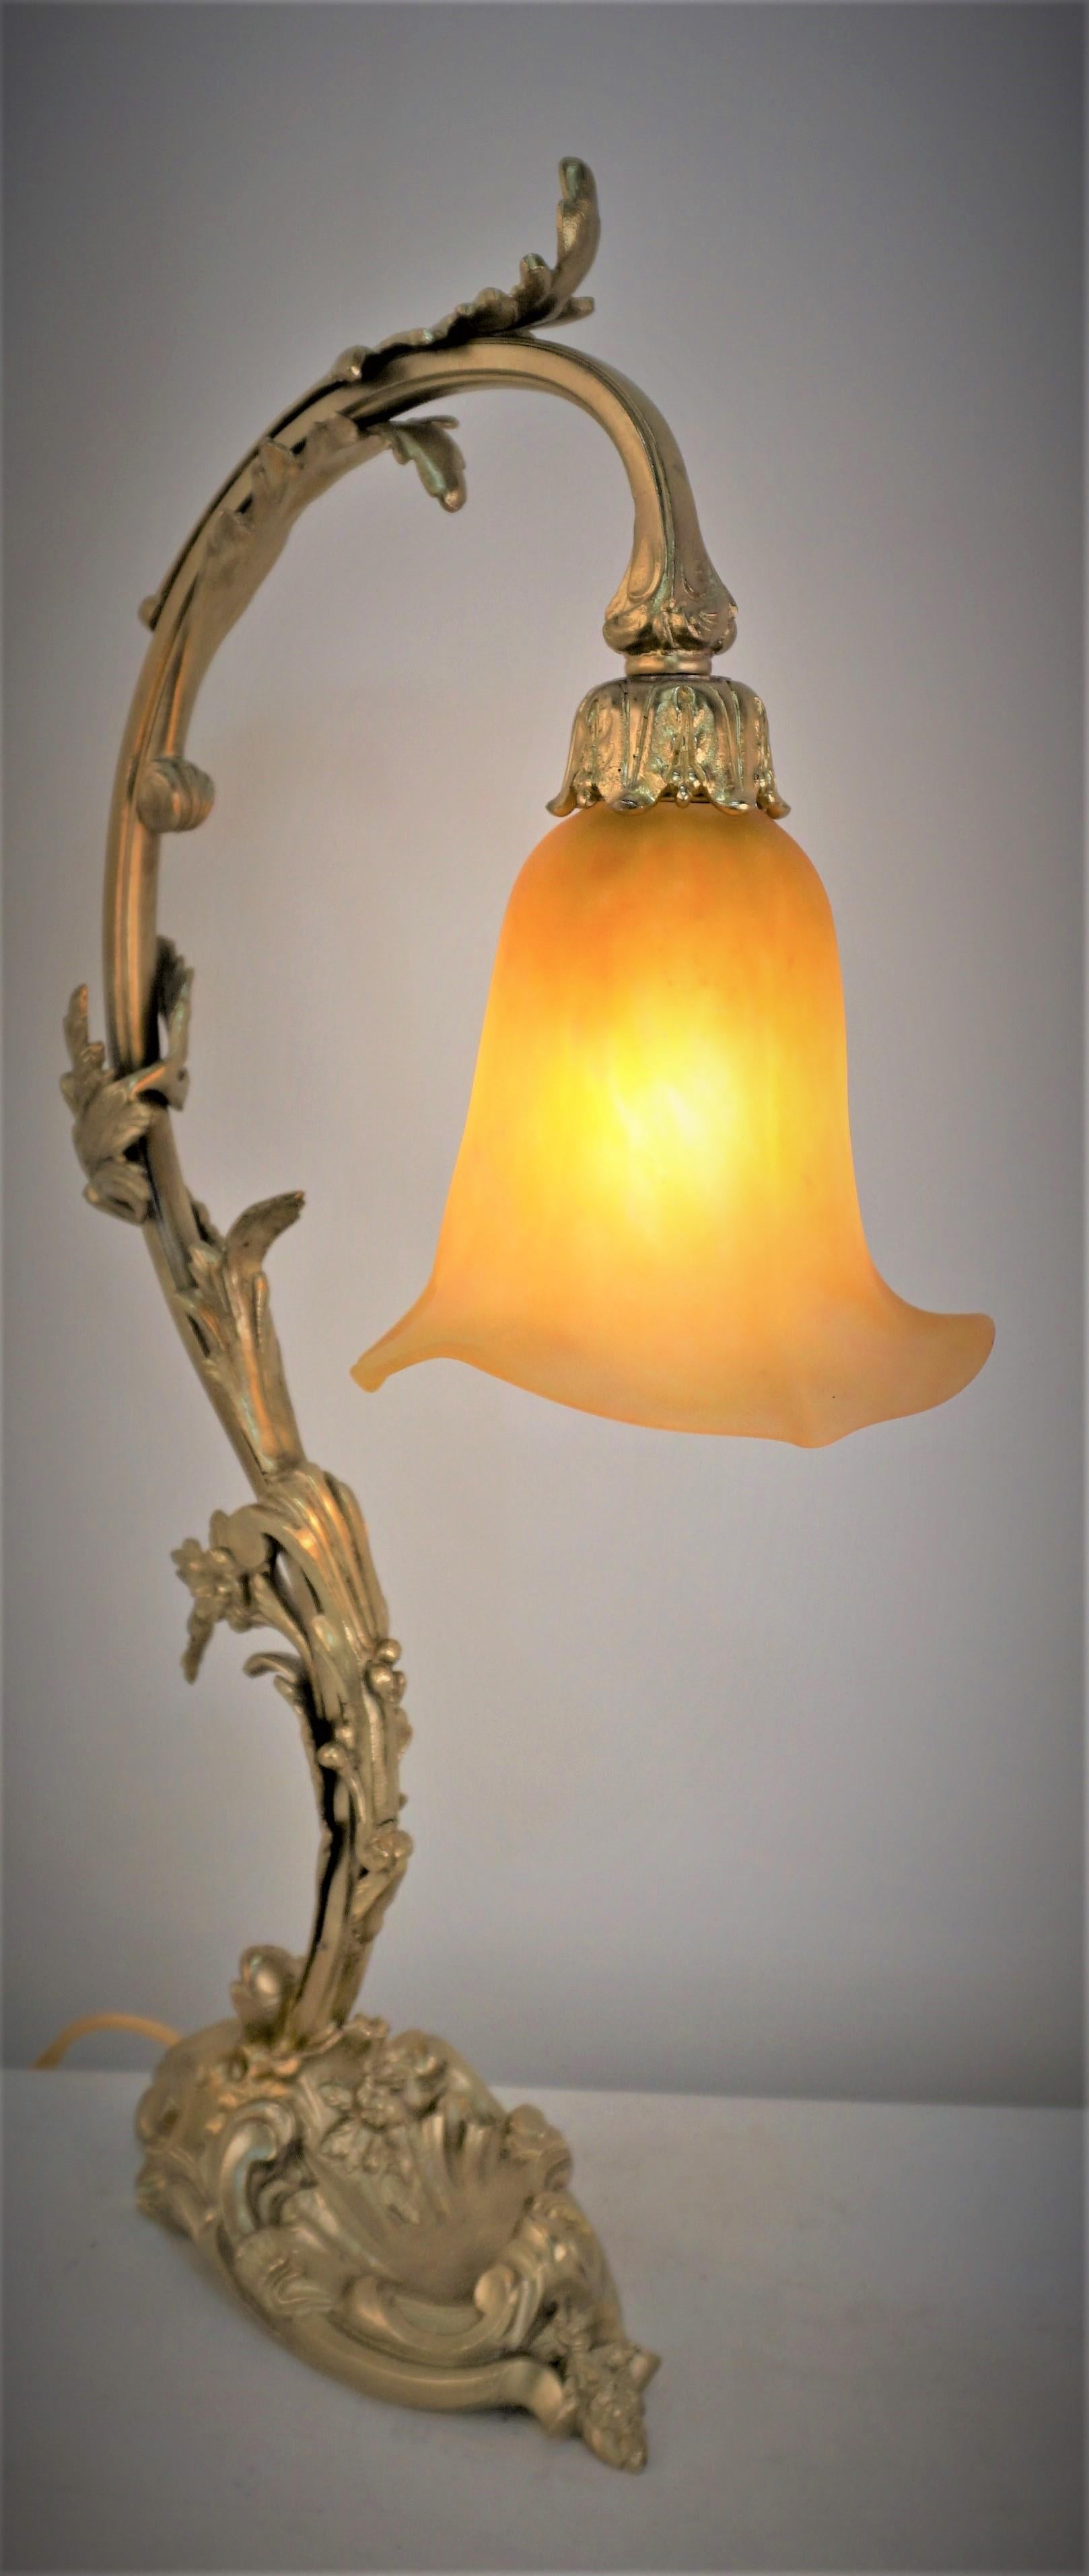 Verre d'art soufflé par Daum, fantastique lampe de table art nouveau à base de bronze.
Recâblage professionnel.